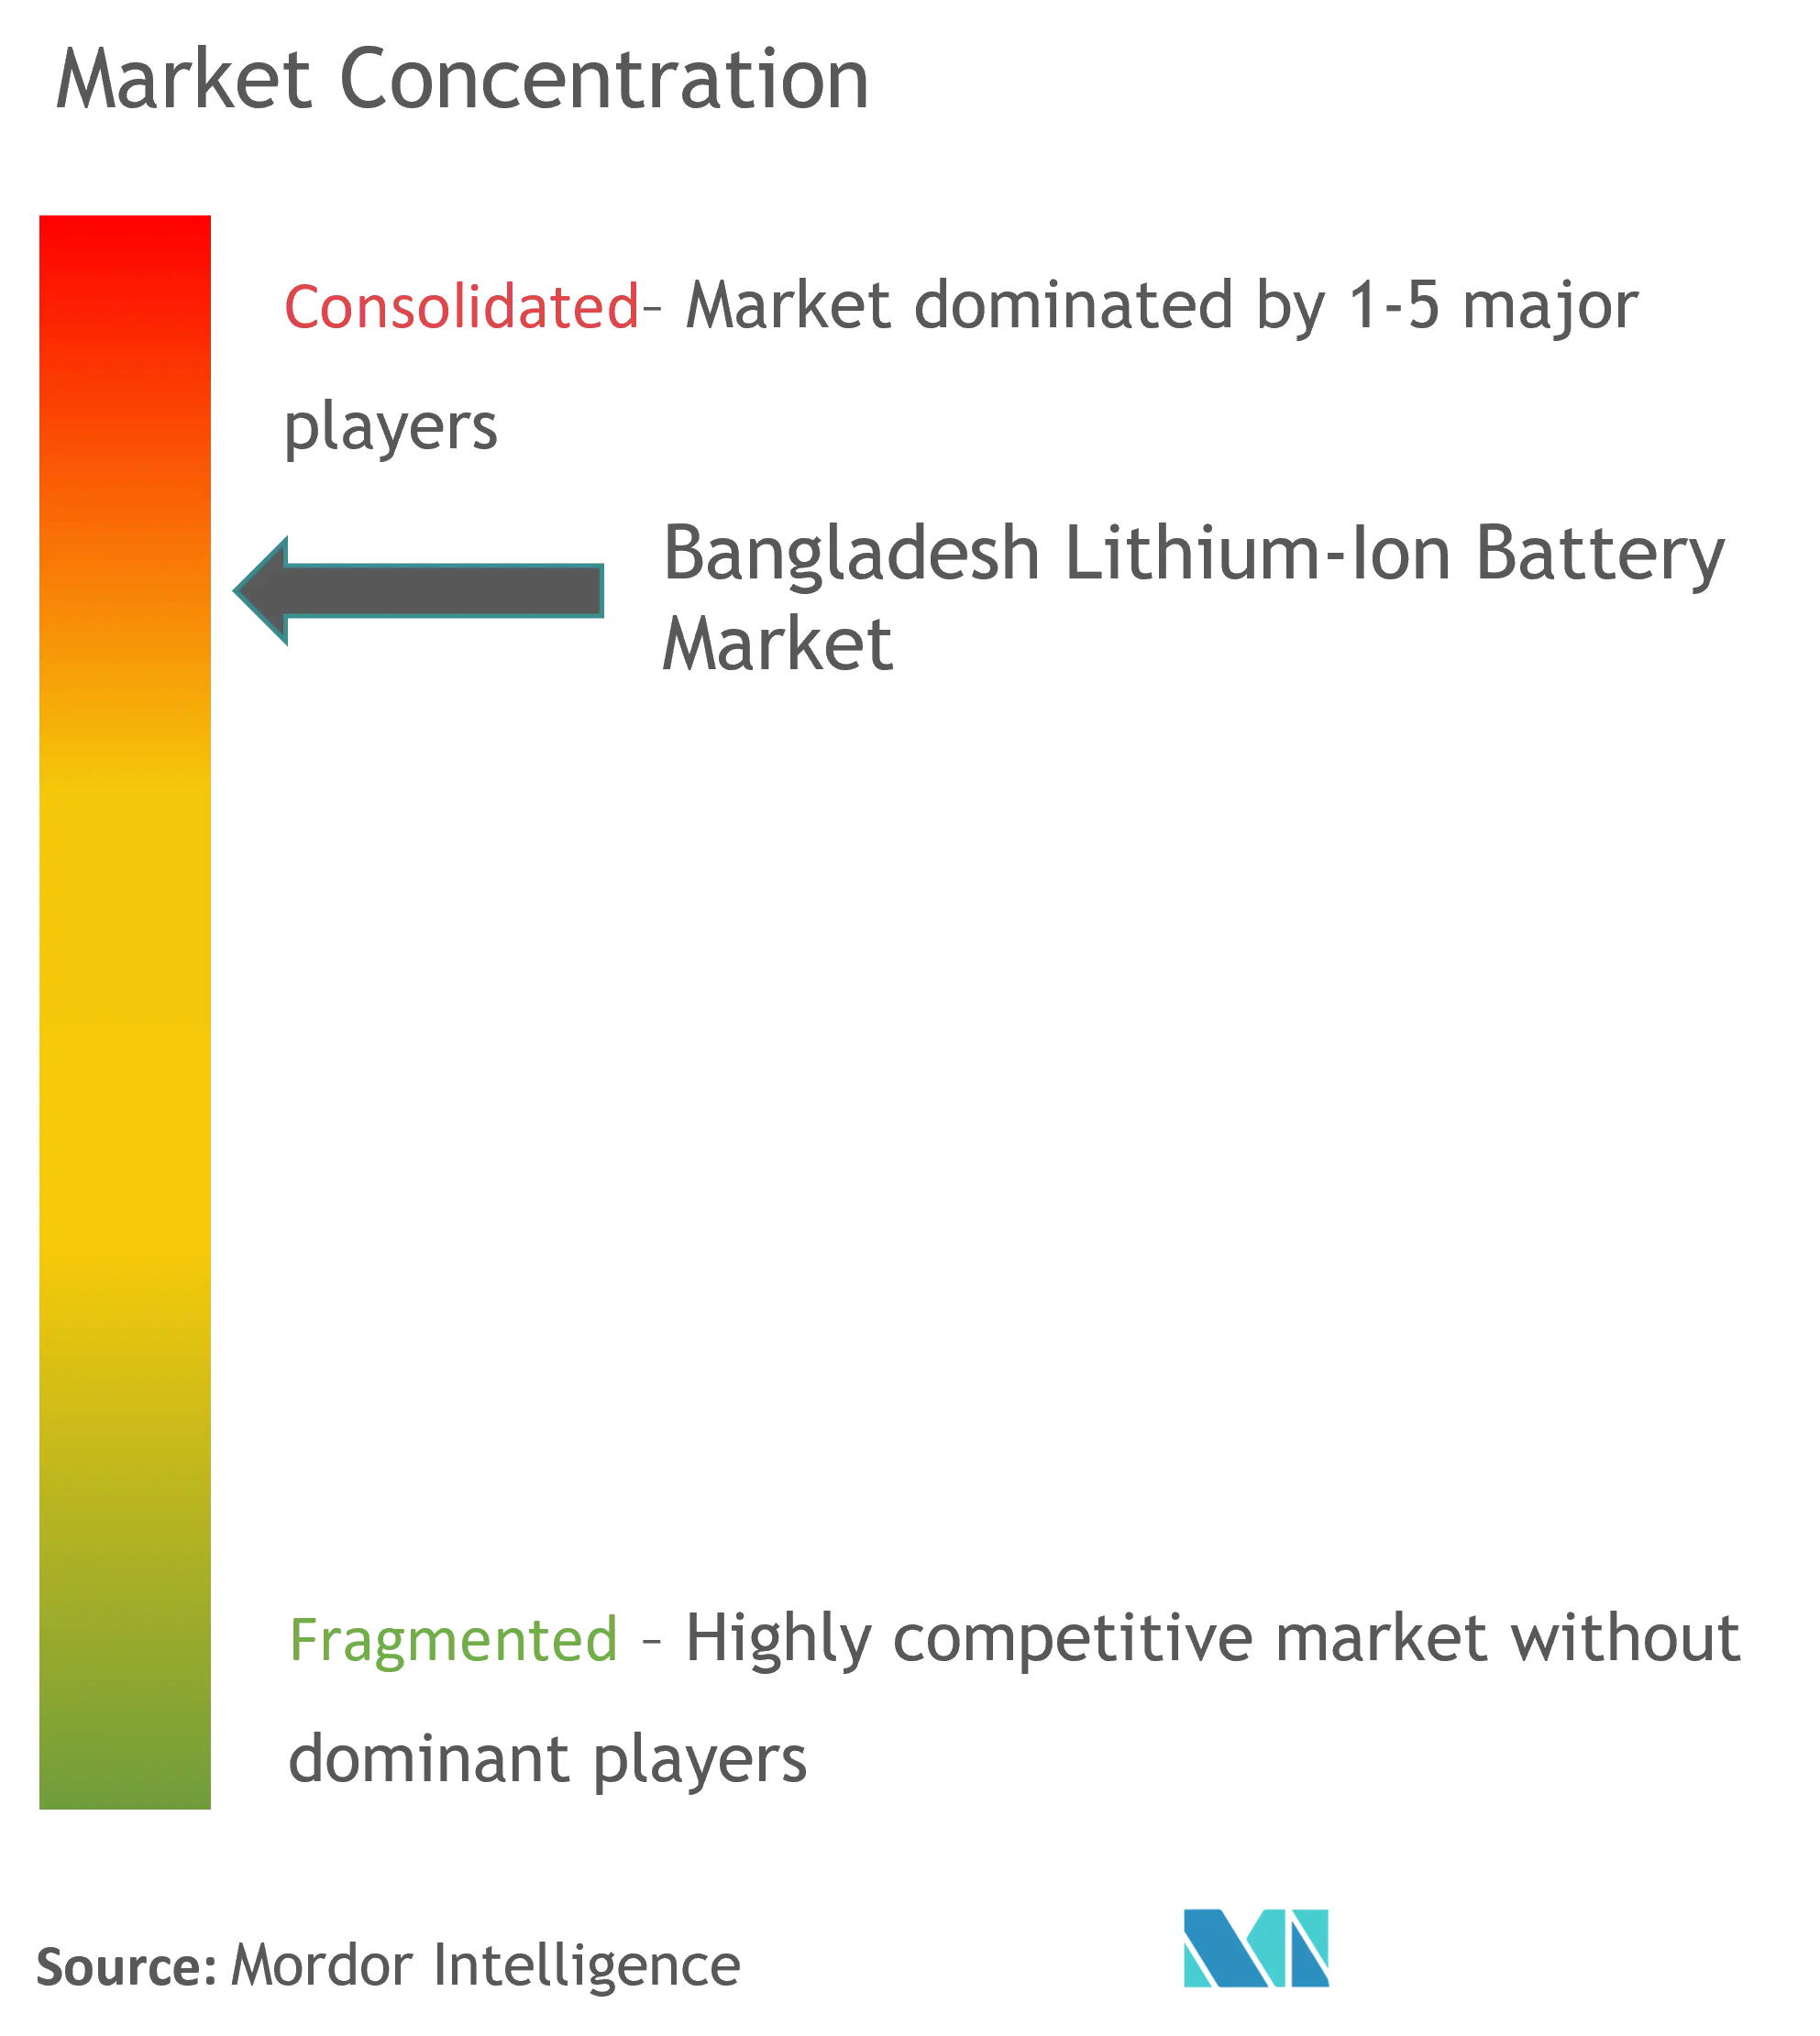 Batería de iones de litio de BangladeshConcentración del Mercado